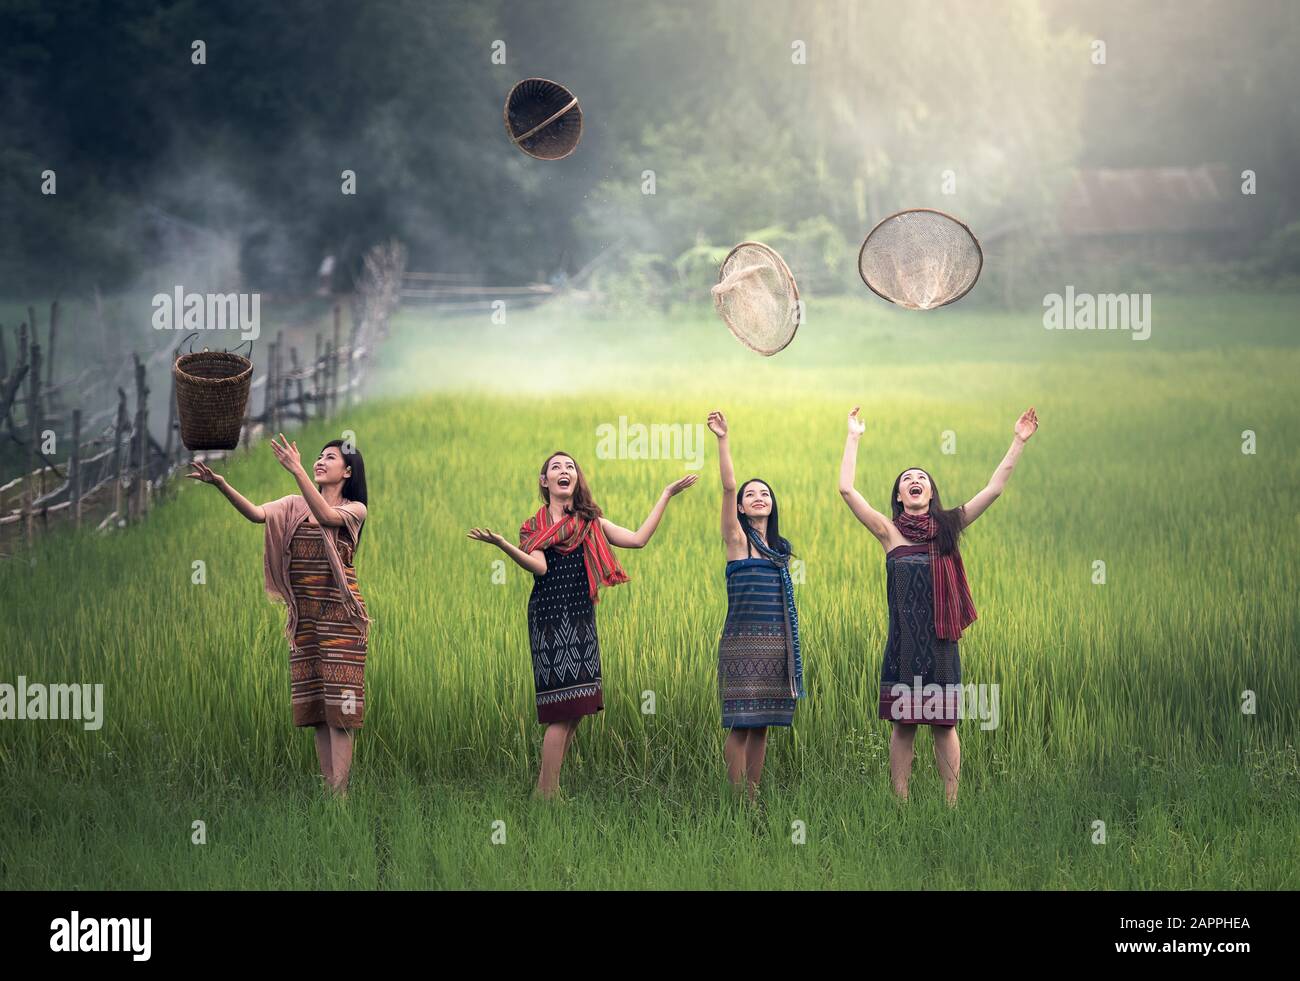 Fröhliche thailändische Landwirtin in Thailand auf dem Land Stockfoto